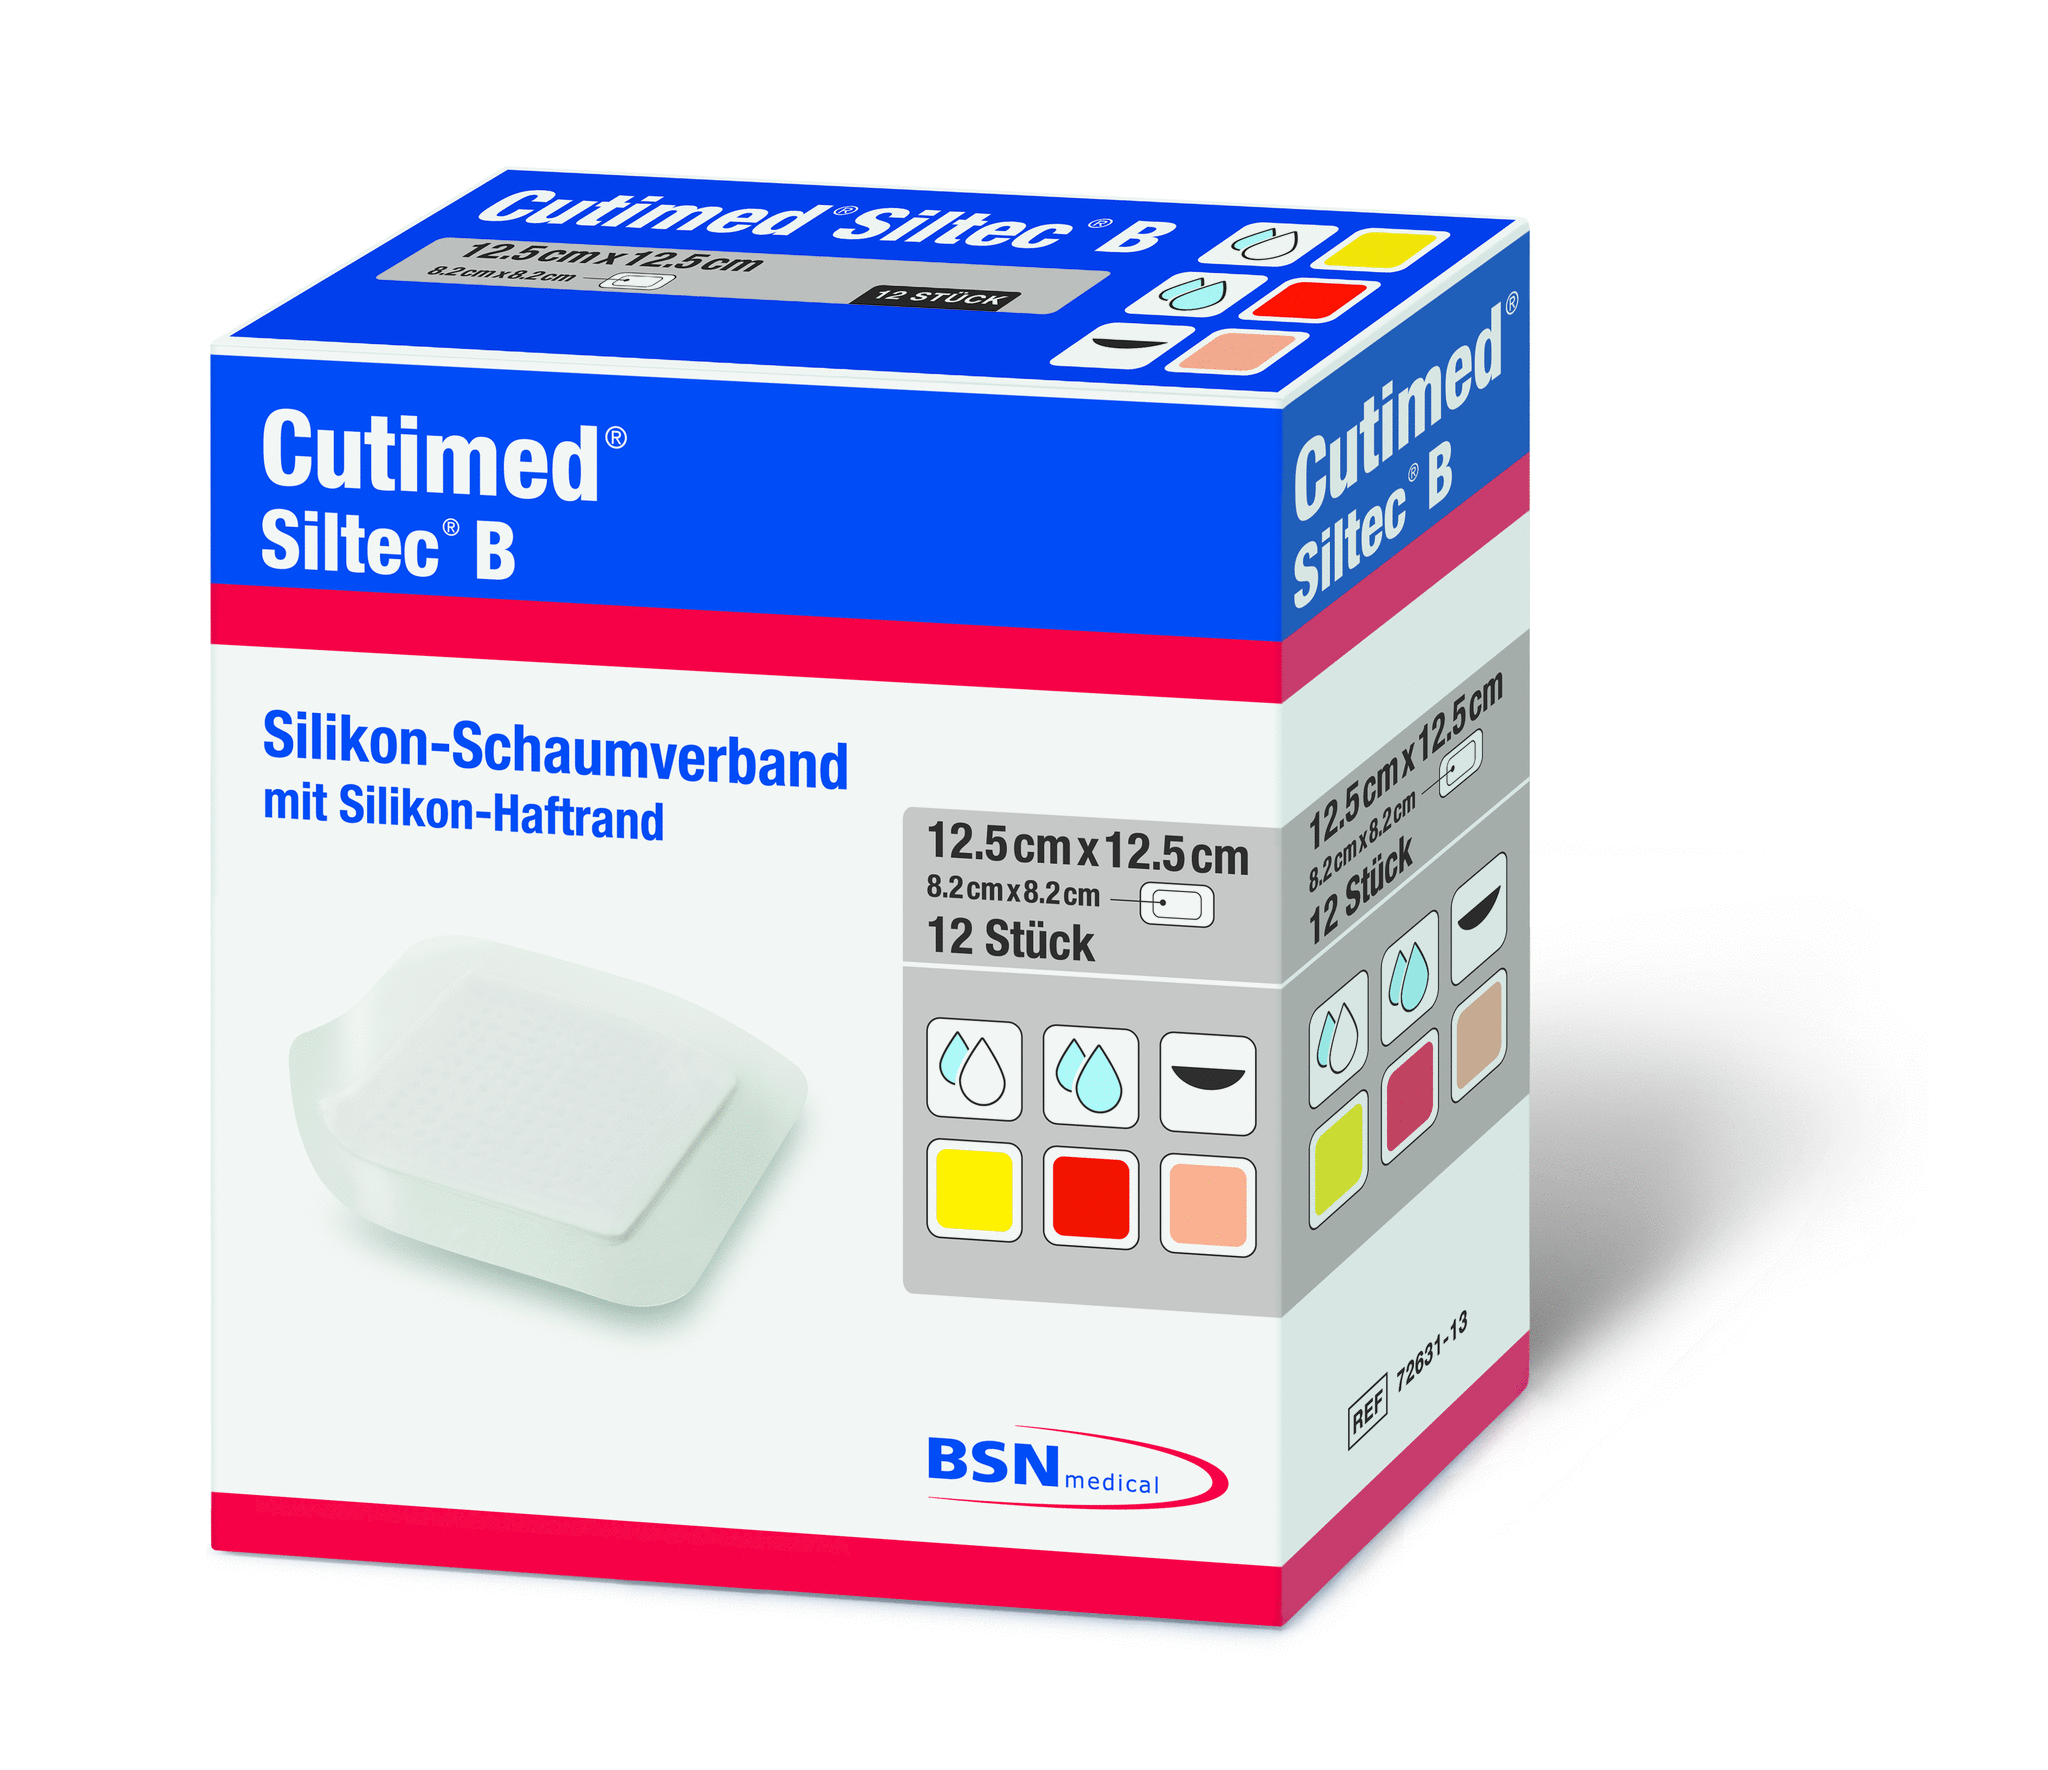 Cutimed Siltec B Schaumverband - Packung á 12 Stück